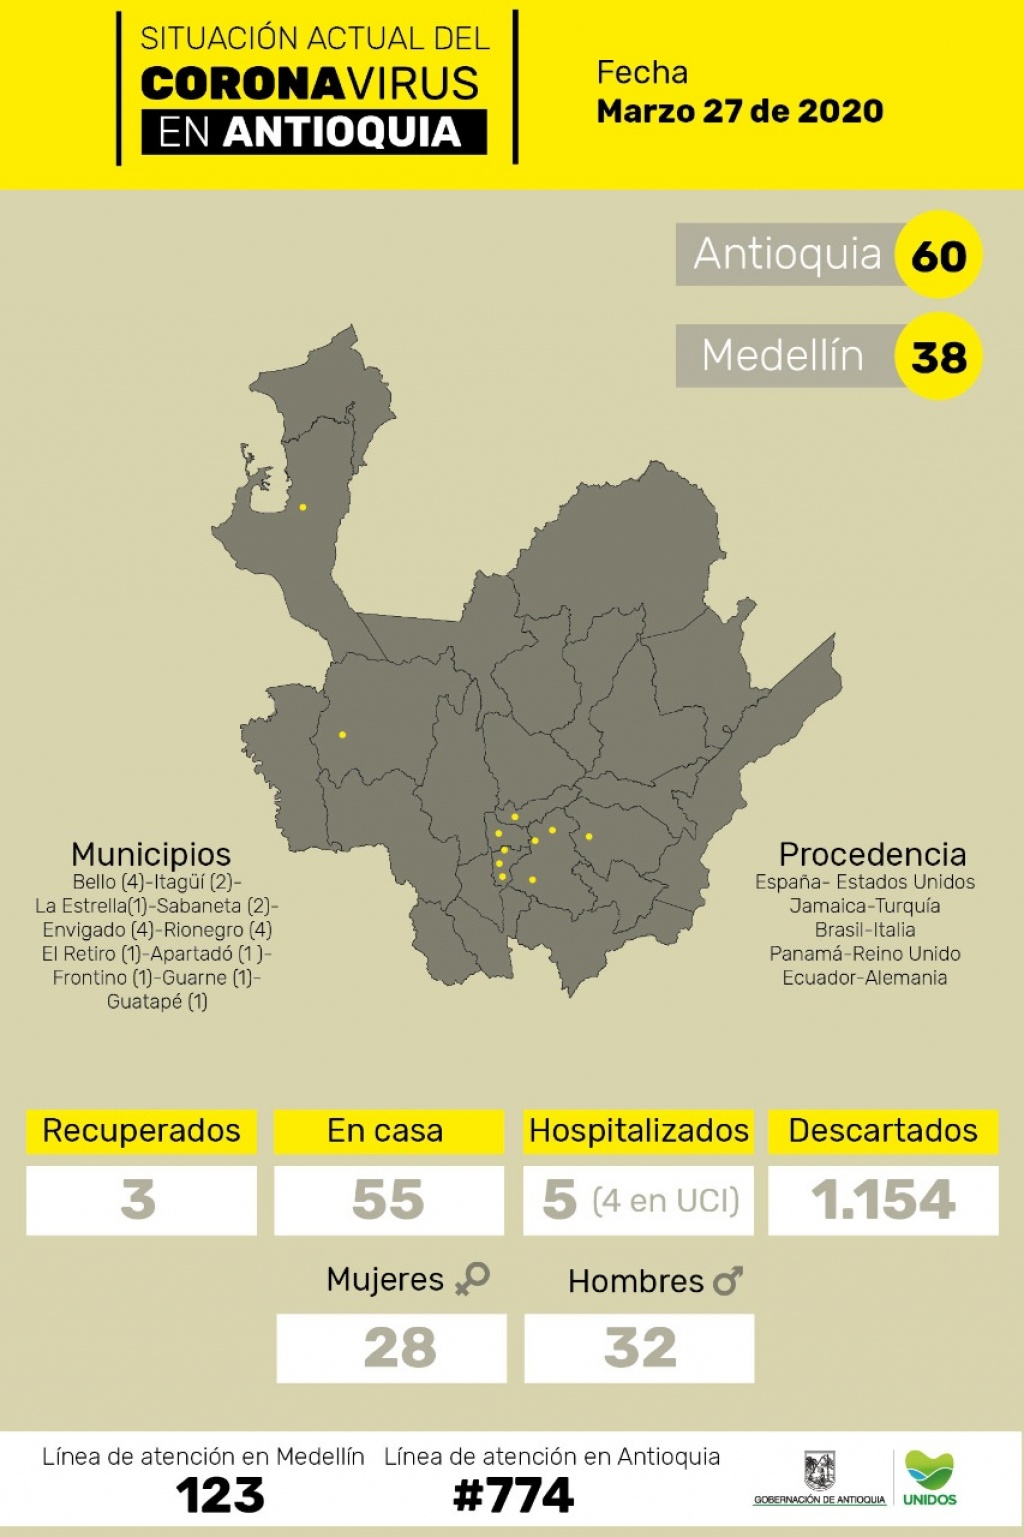 En Antioquia se registran 60 personas contagiadas con coronavirus